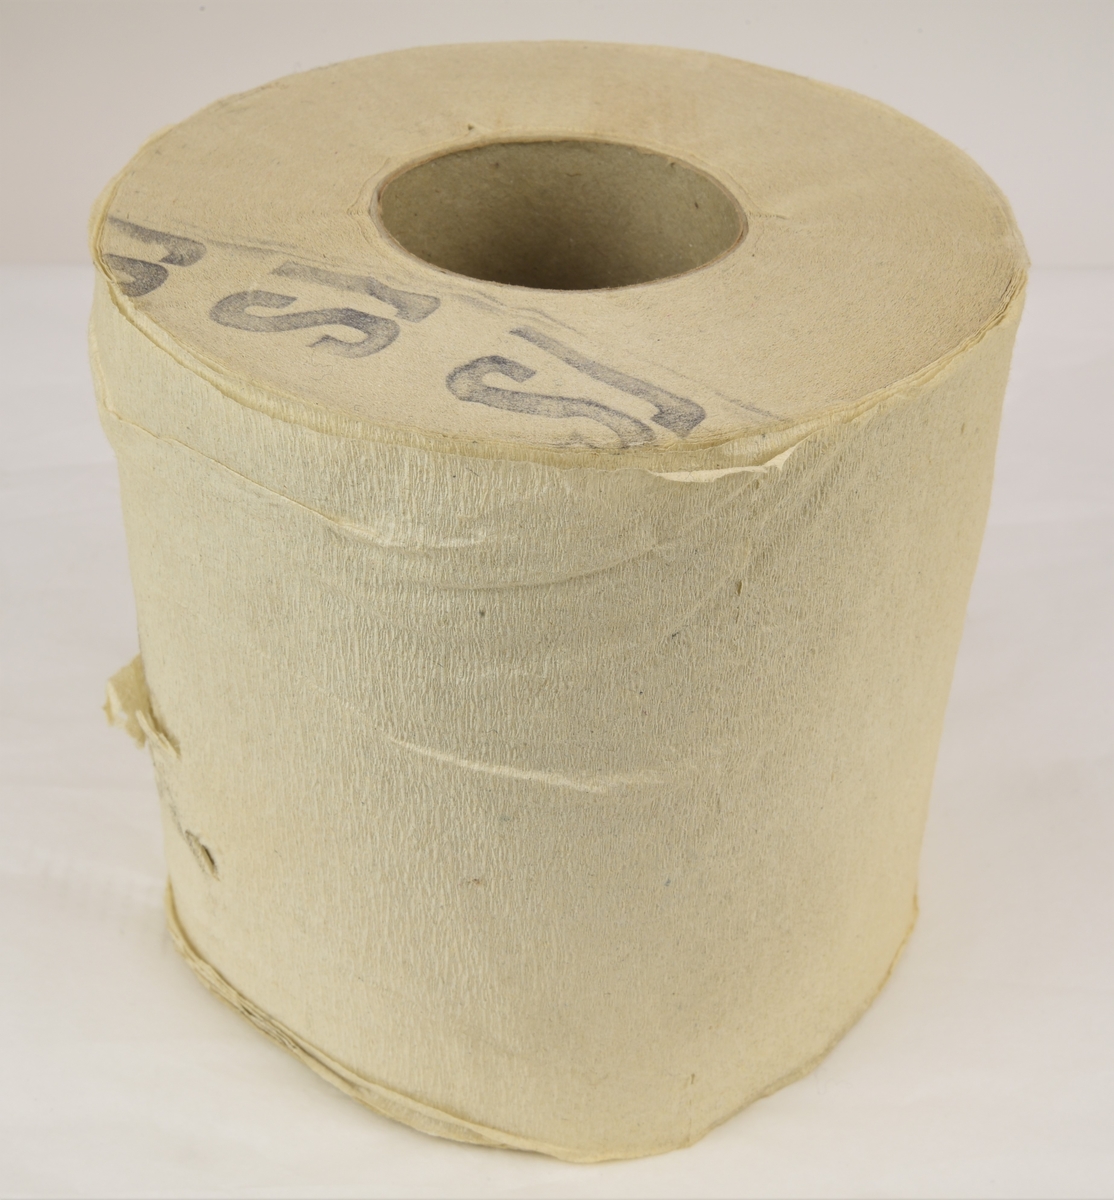 Toalettpappersrulle av svagt kräppat papper. Rullen är stämplad SJ på ena sidan med en mörk färg.